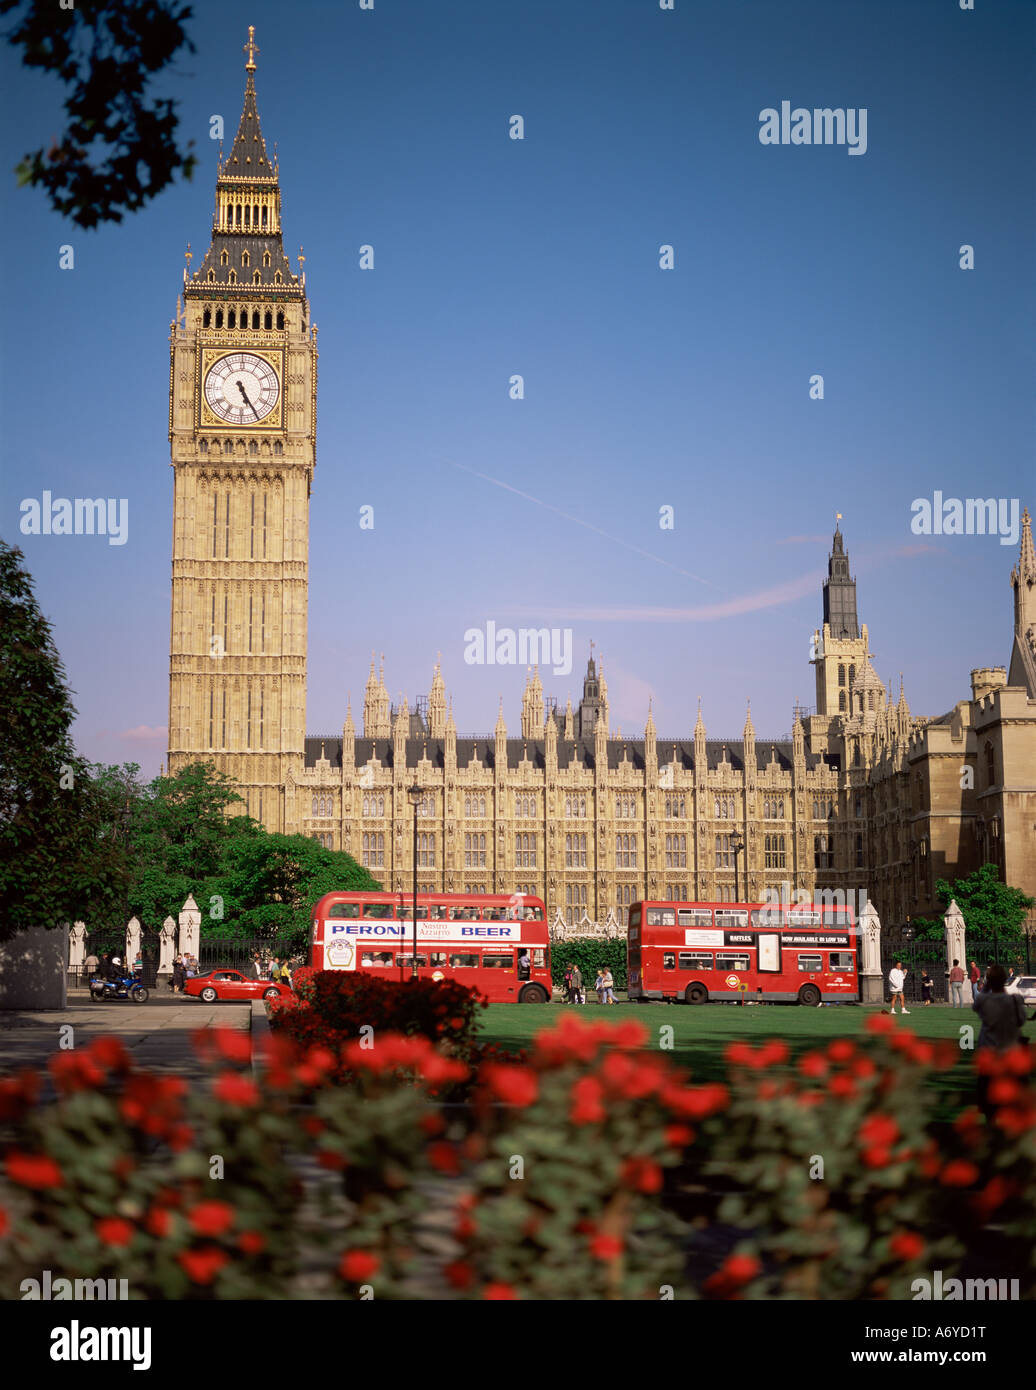 Case del Parlamento Sito Patrimonio Mondiale dell'UNESCO e la piazza del Parlamento Westminster Londra England Regno Unito Europa Foto Stock